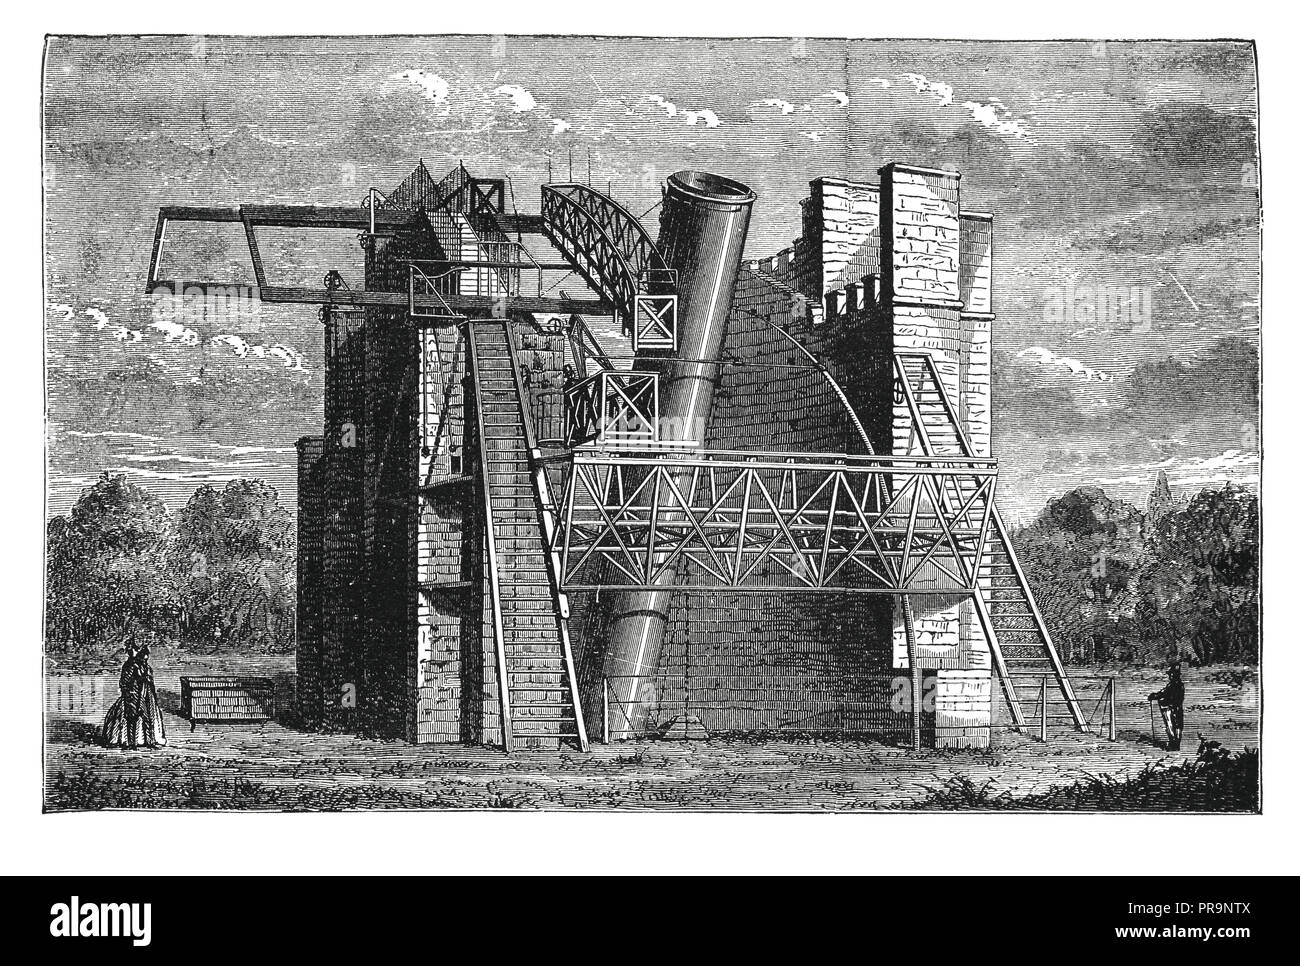 19-ème siècle illustration de Rosse six pieds - un télescope télescope historique de 72 po (1,8 m) Aperture, ce qui était le plus grand télescope dans Banque D'Images